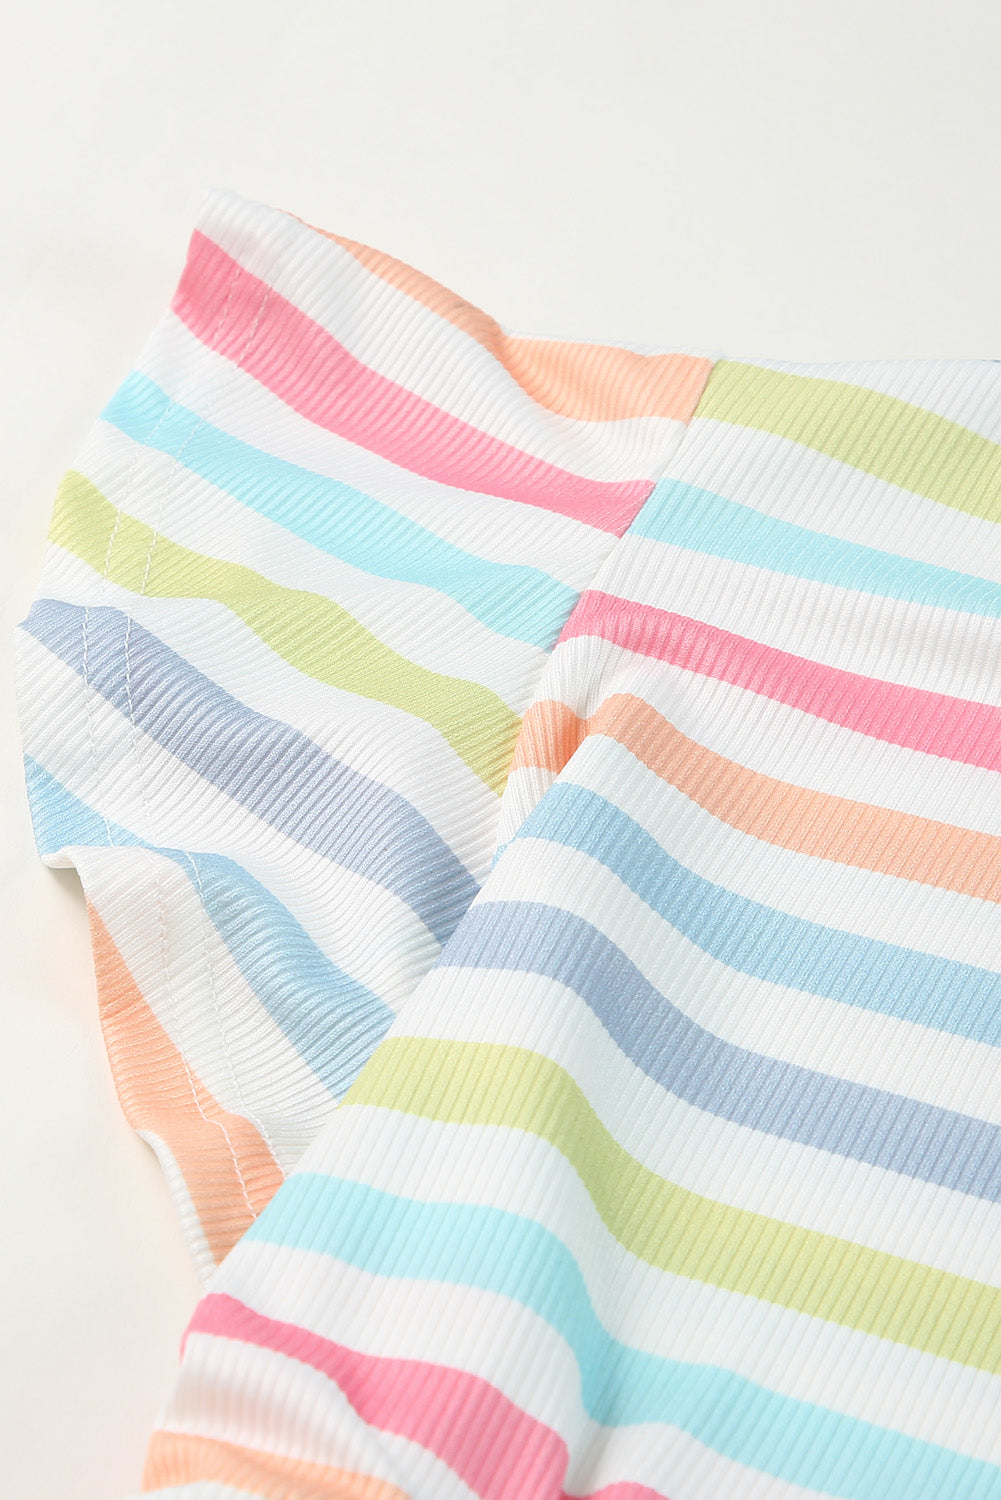 Camicetta babydoll in maglia testurizzata con stampa a righe multicolori